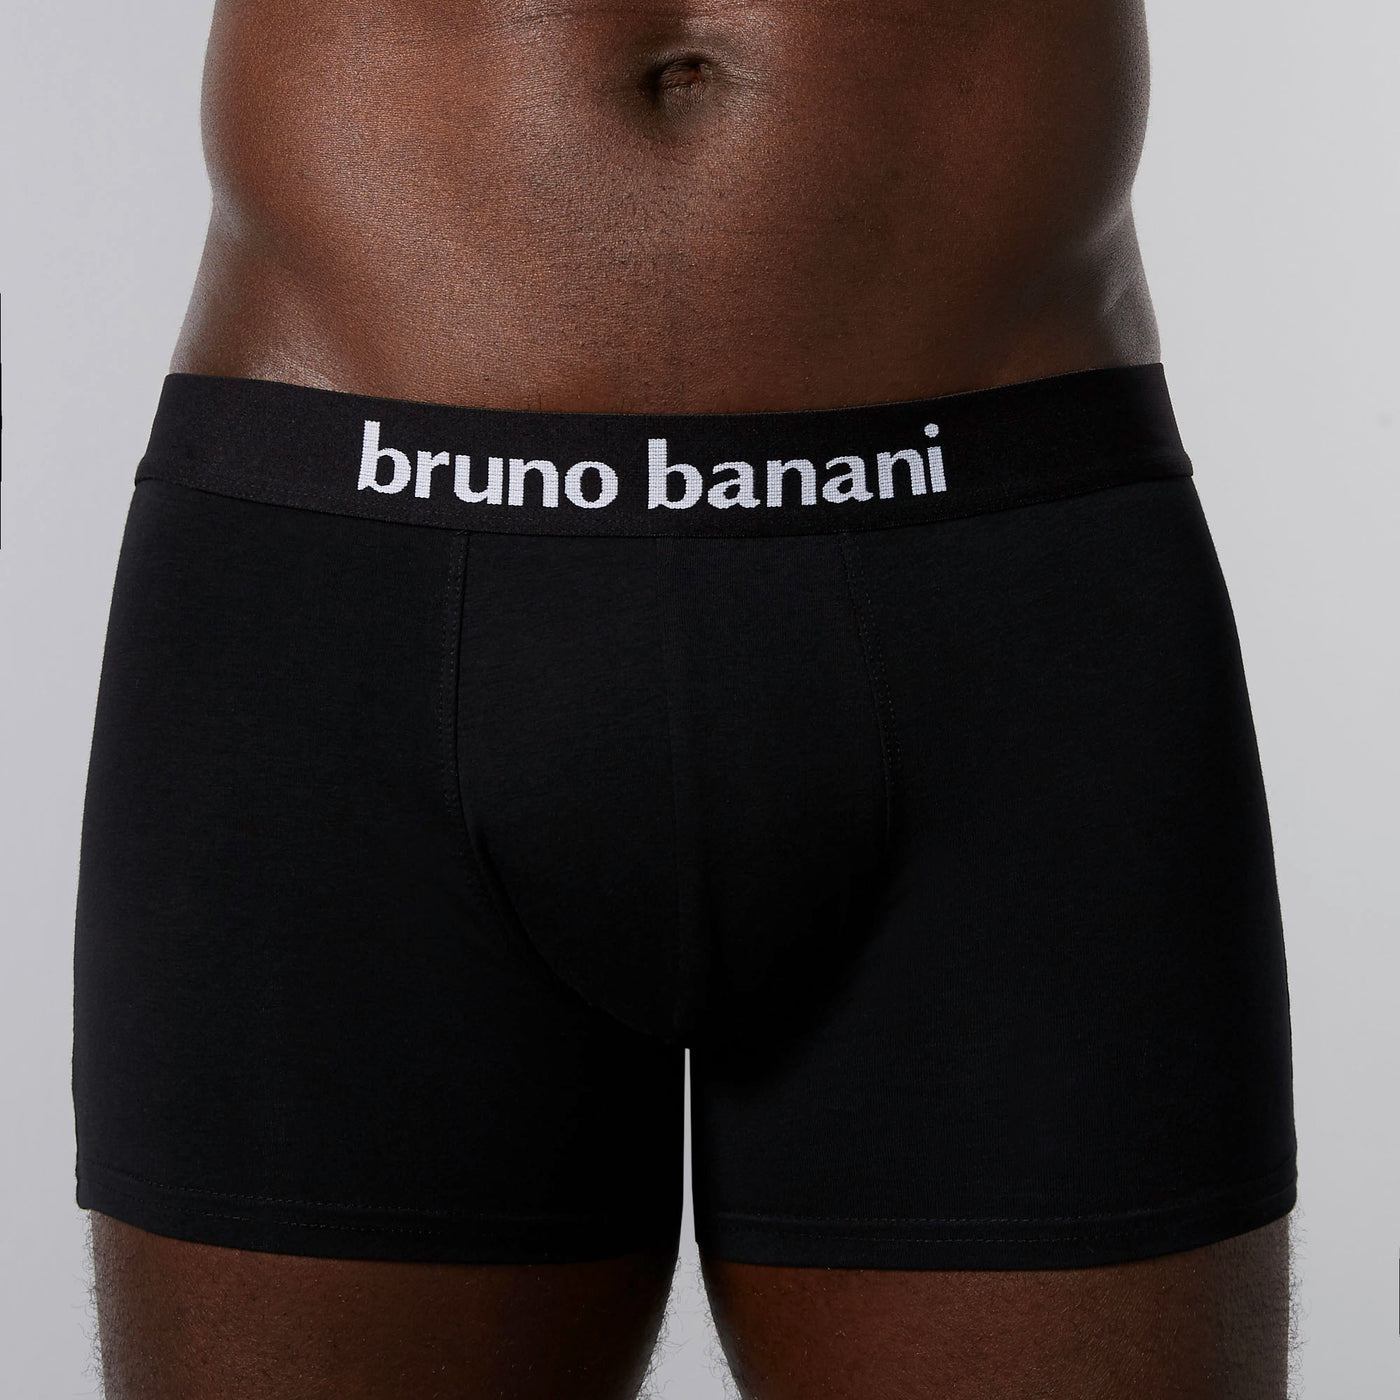 bruno banani – Flowing – Shorts 2 Pack